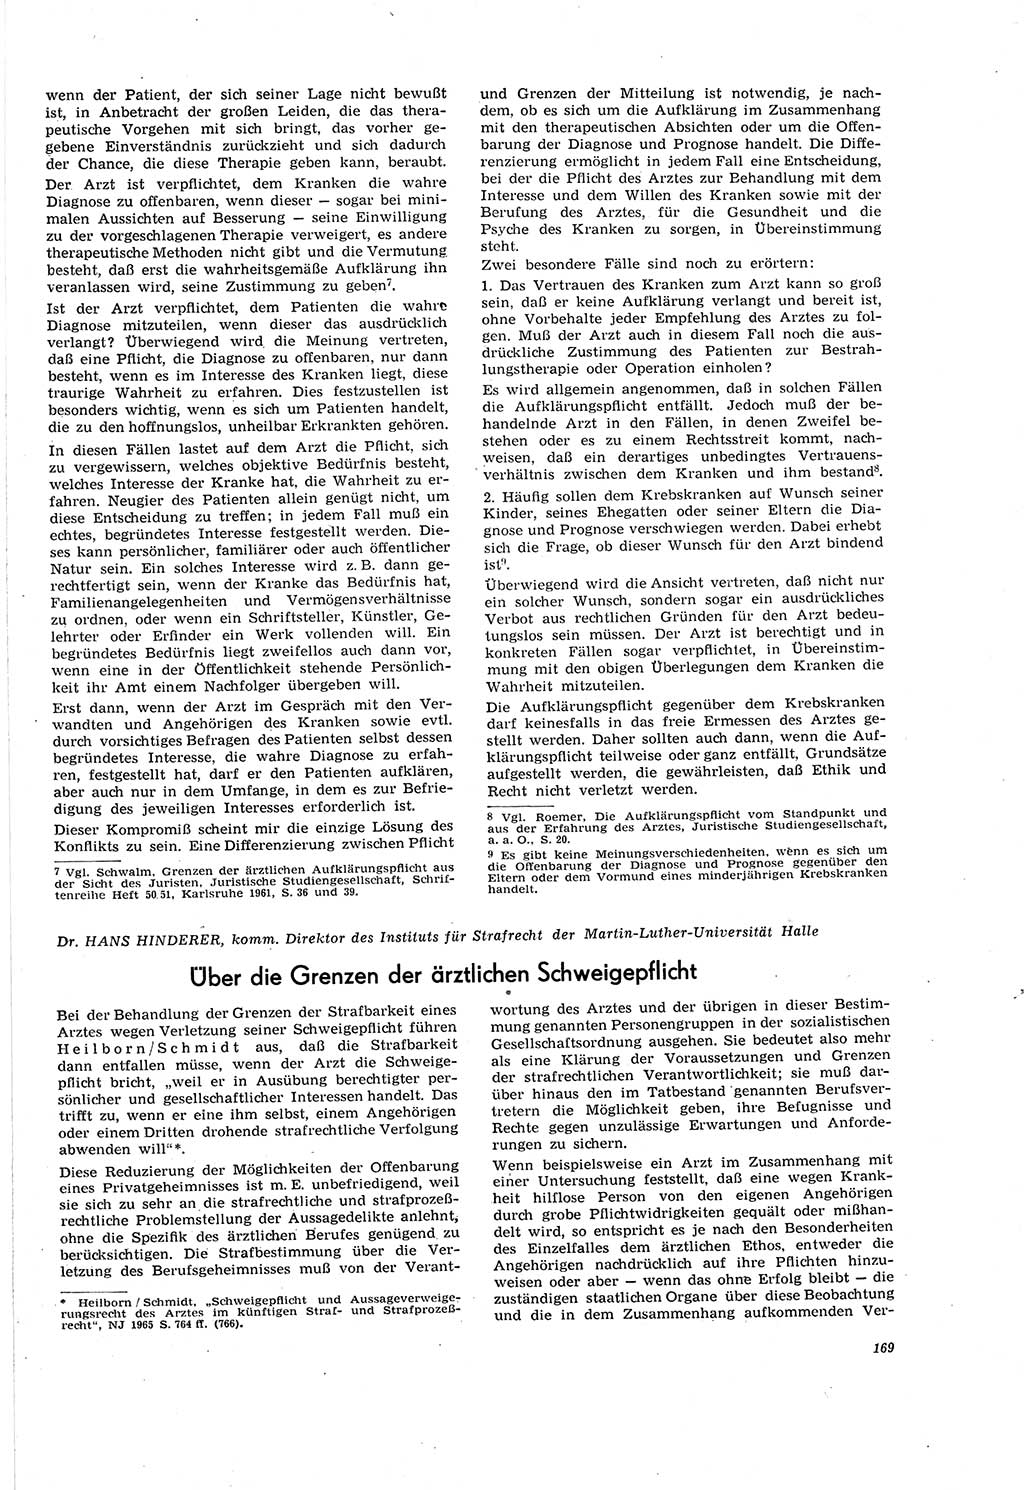 Neue Justiz (NJ), Zeitschrift für Recht und Rechtswissenschaft [Deutsche Demokratische Republik (DDR)], 20. Jahrgang 1966, Seite 169 (NJ DDR 1966, S. 169)